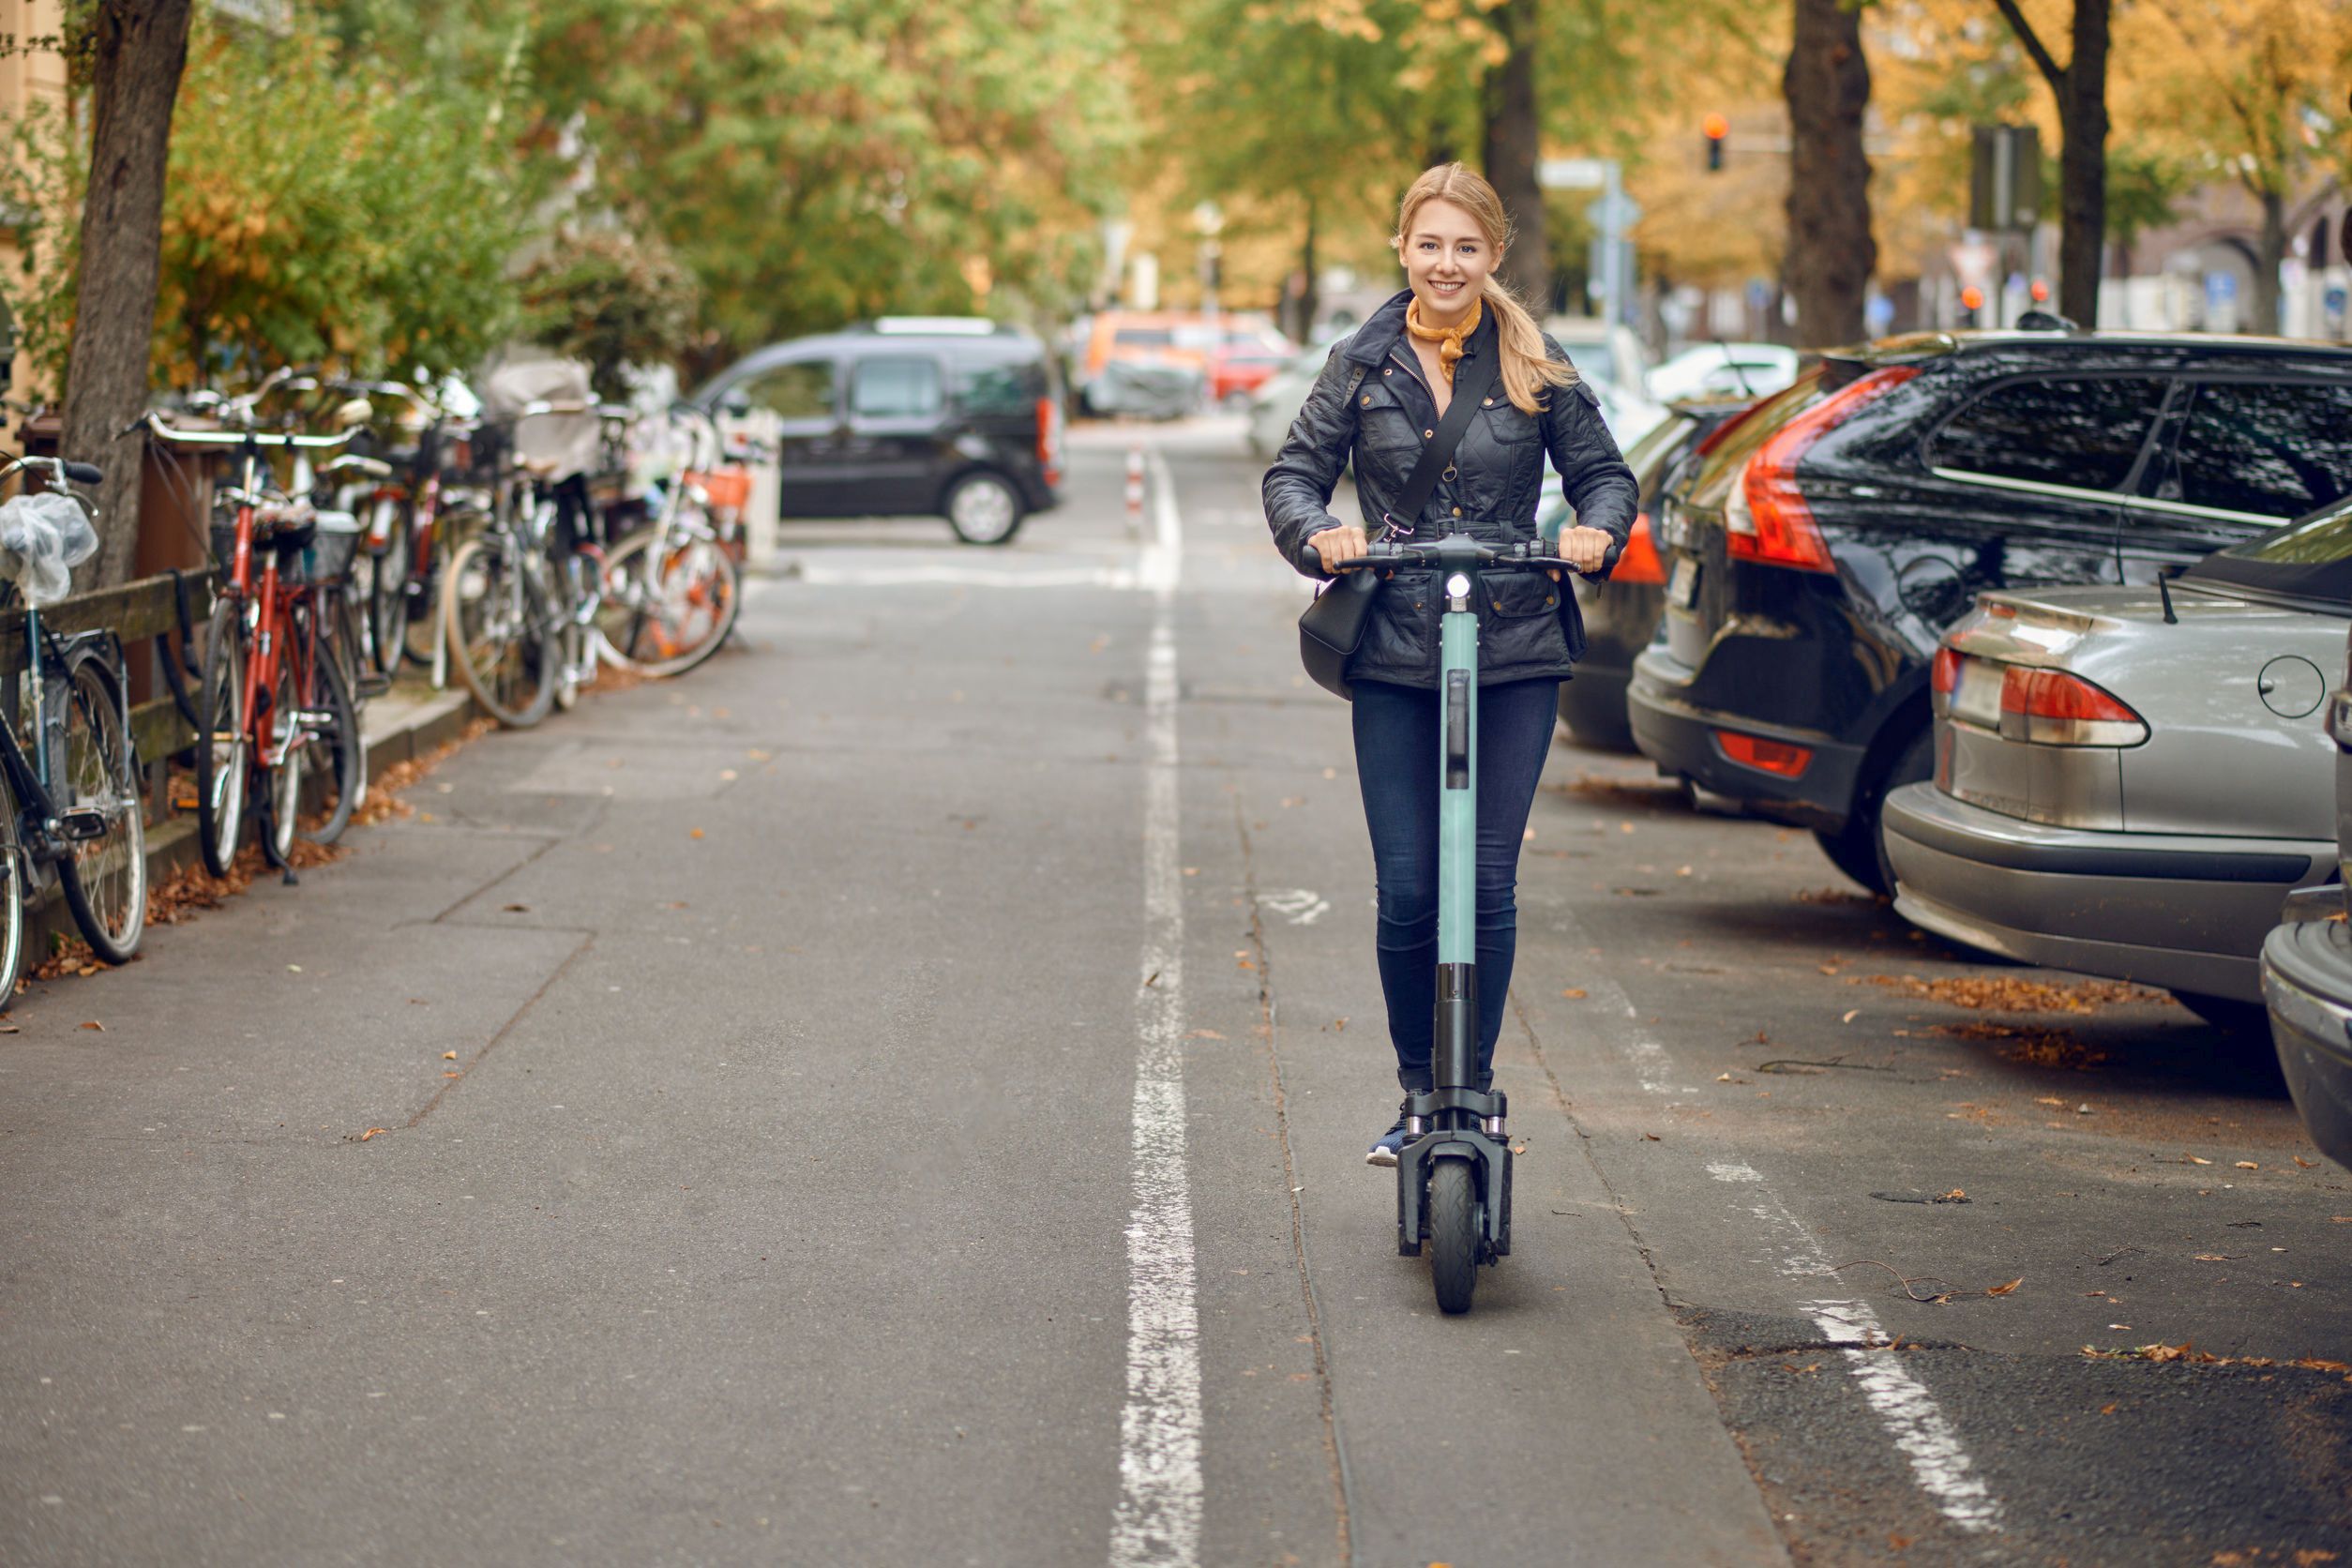 Aviz iubitorilor de trotinete electrice: MAI a lansat un proiect ce prevede ca aceste vehicule electrice vor fi conduse numai pe pista pentru biciclete, de către pesoane care au minimum 14 ani